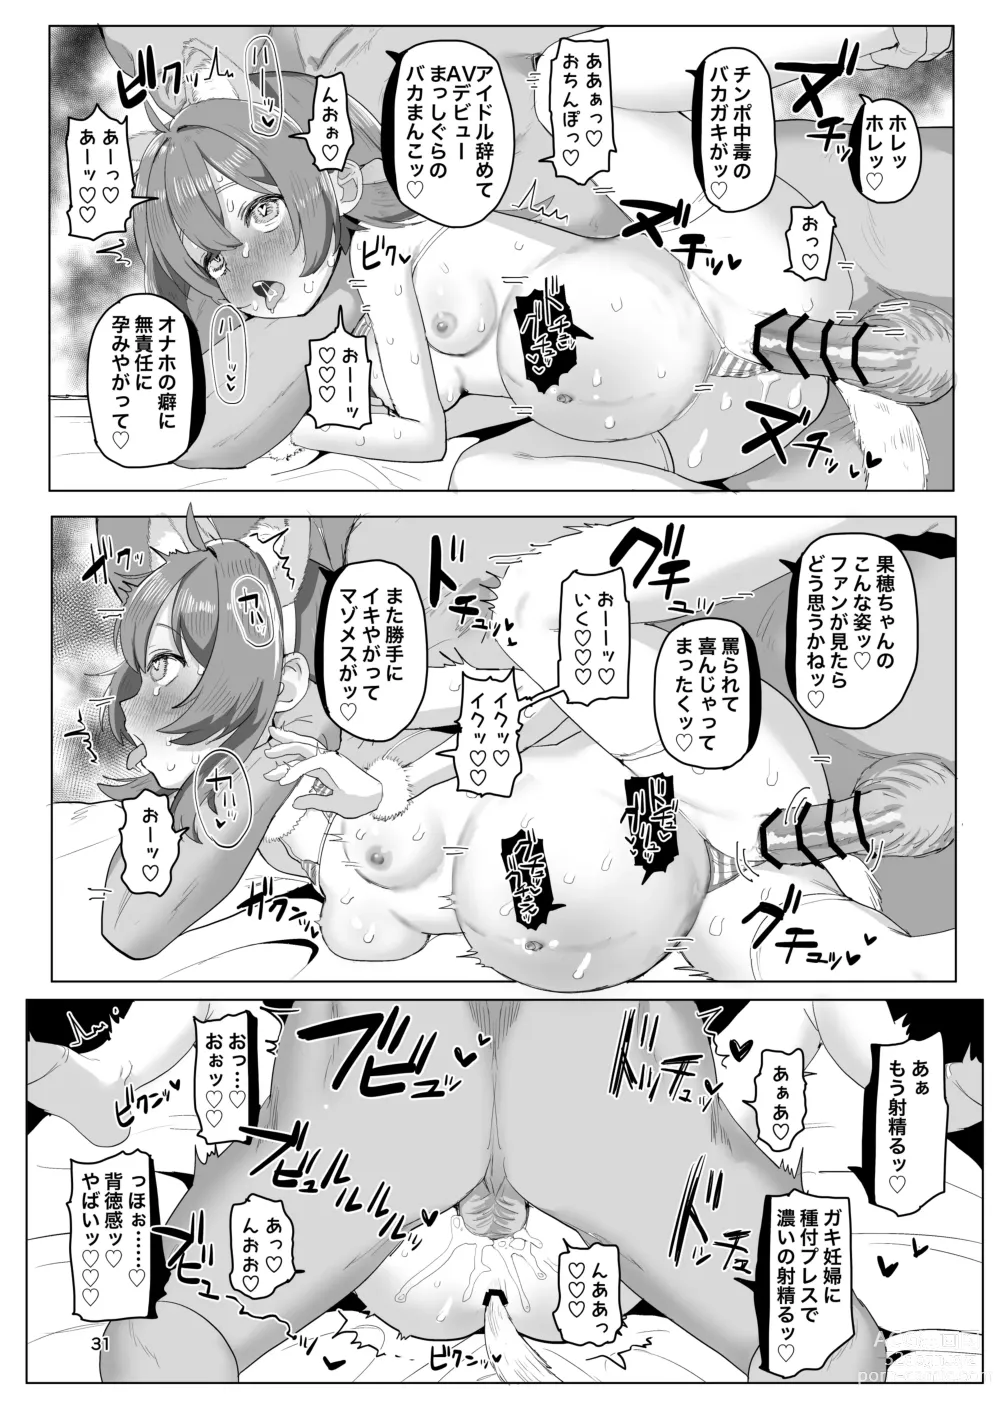 Page 30 of doujinshi Hitokuchi Echi Manga 2